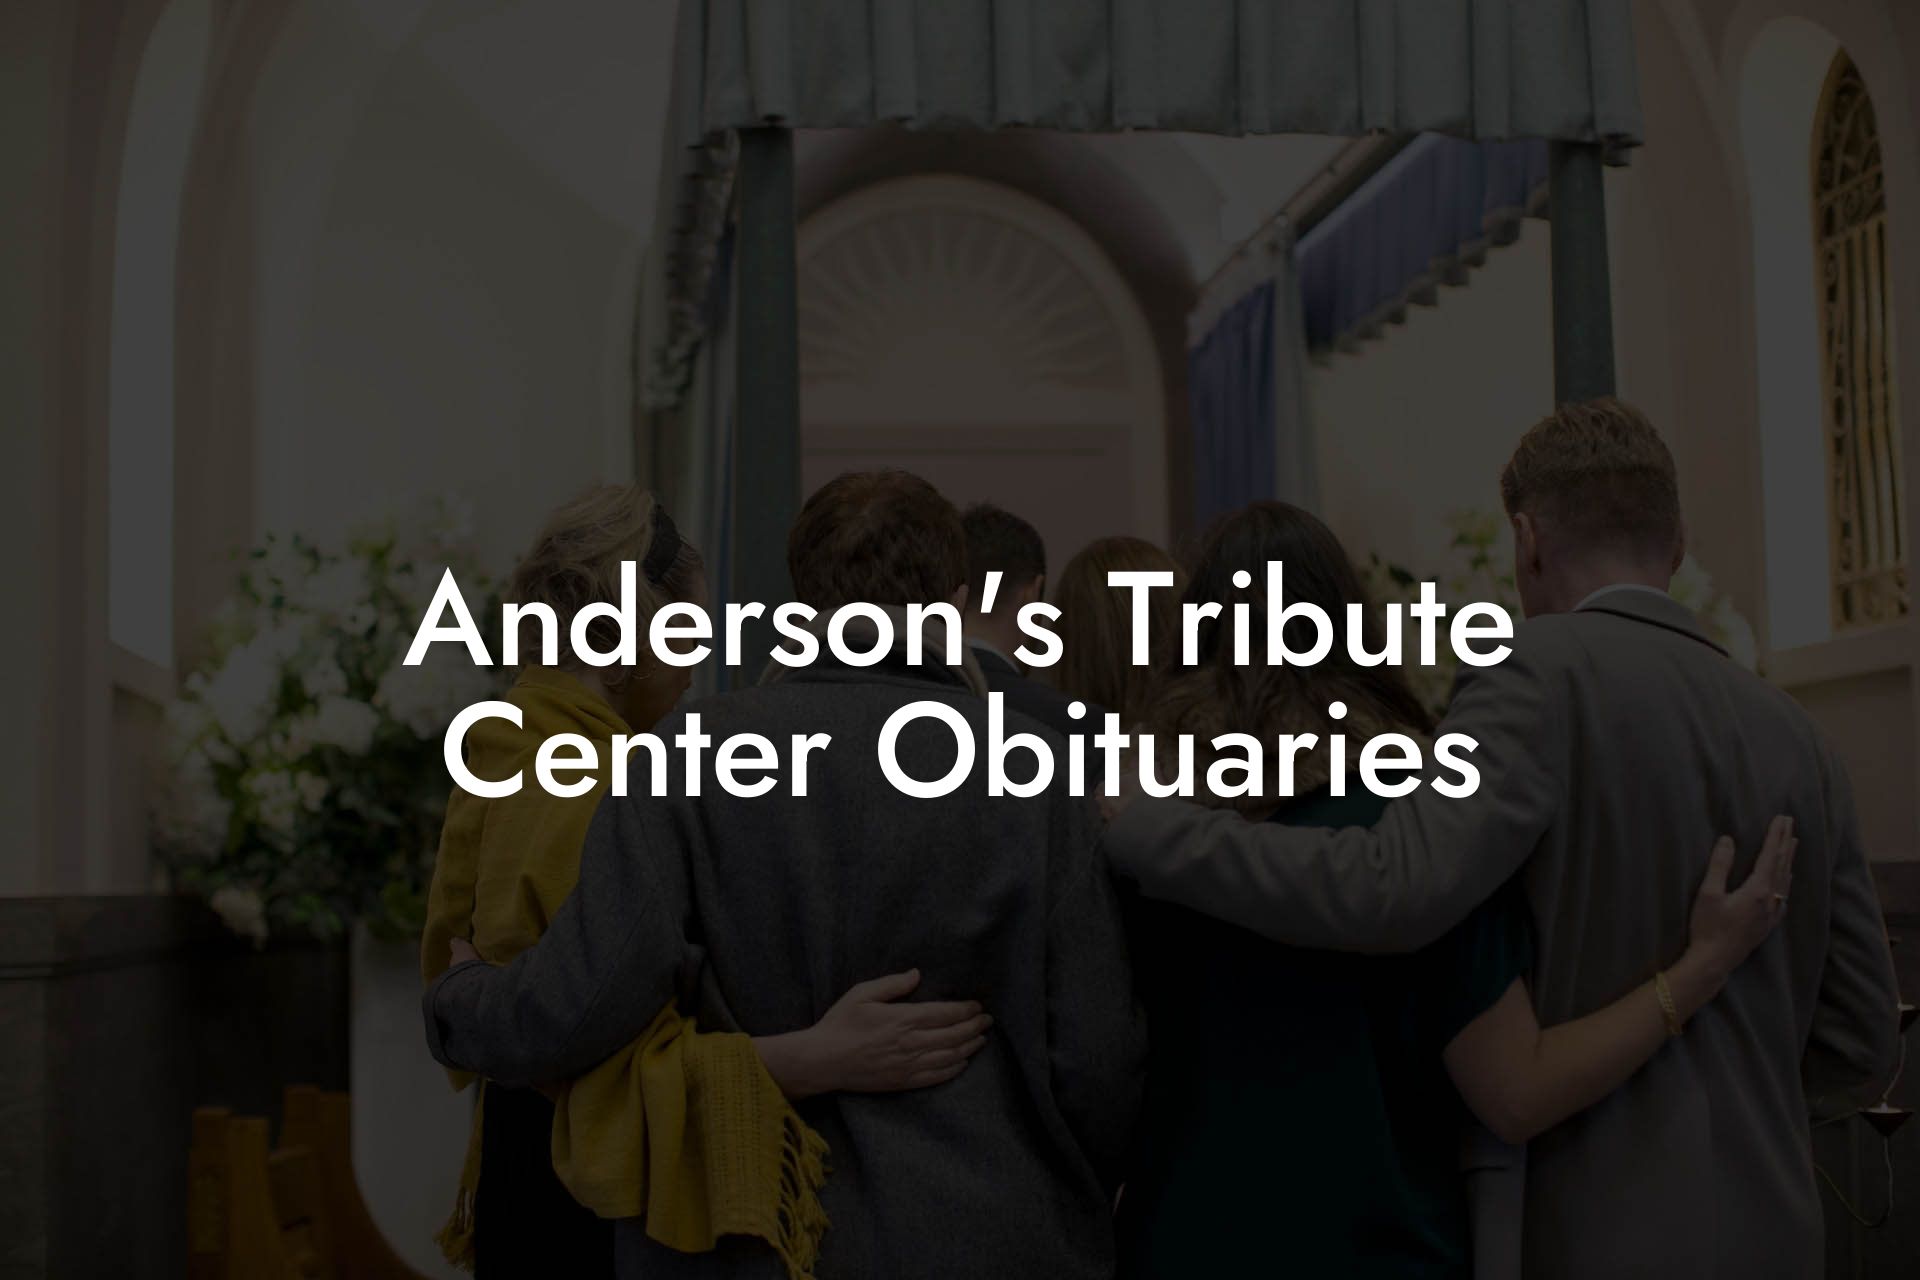 Anderson's Tribute Center Obituaries